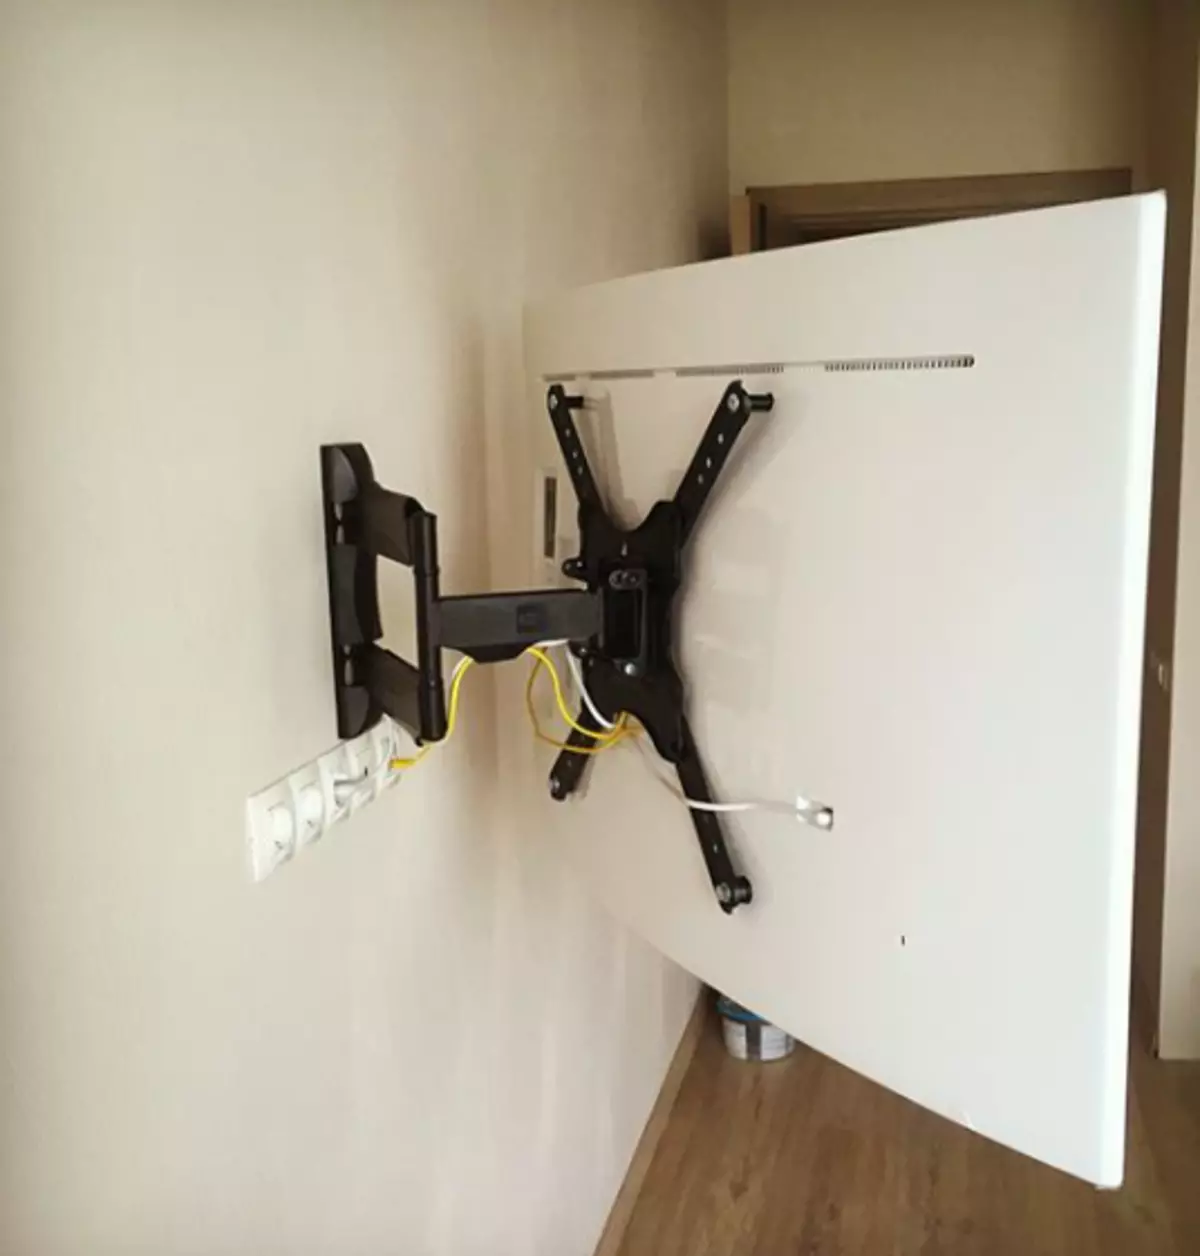 Cómo colgar un televisor en la pared: instrucciones paso a paso 10605_25